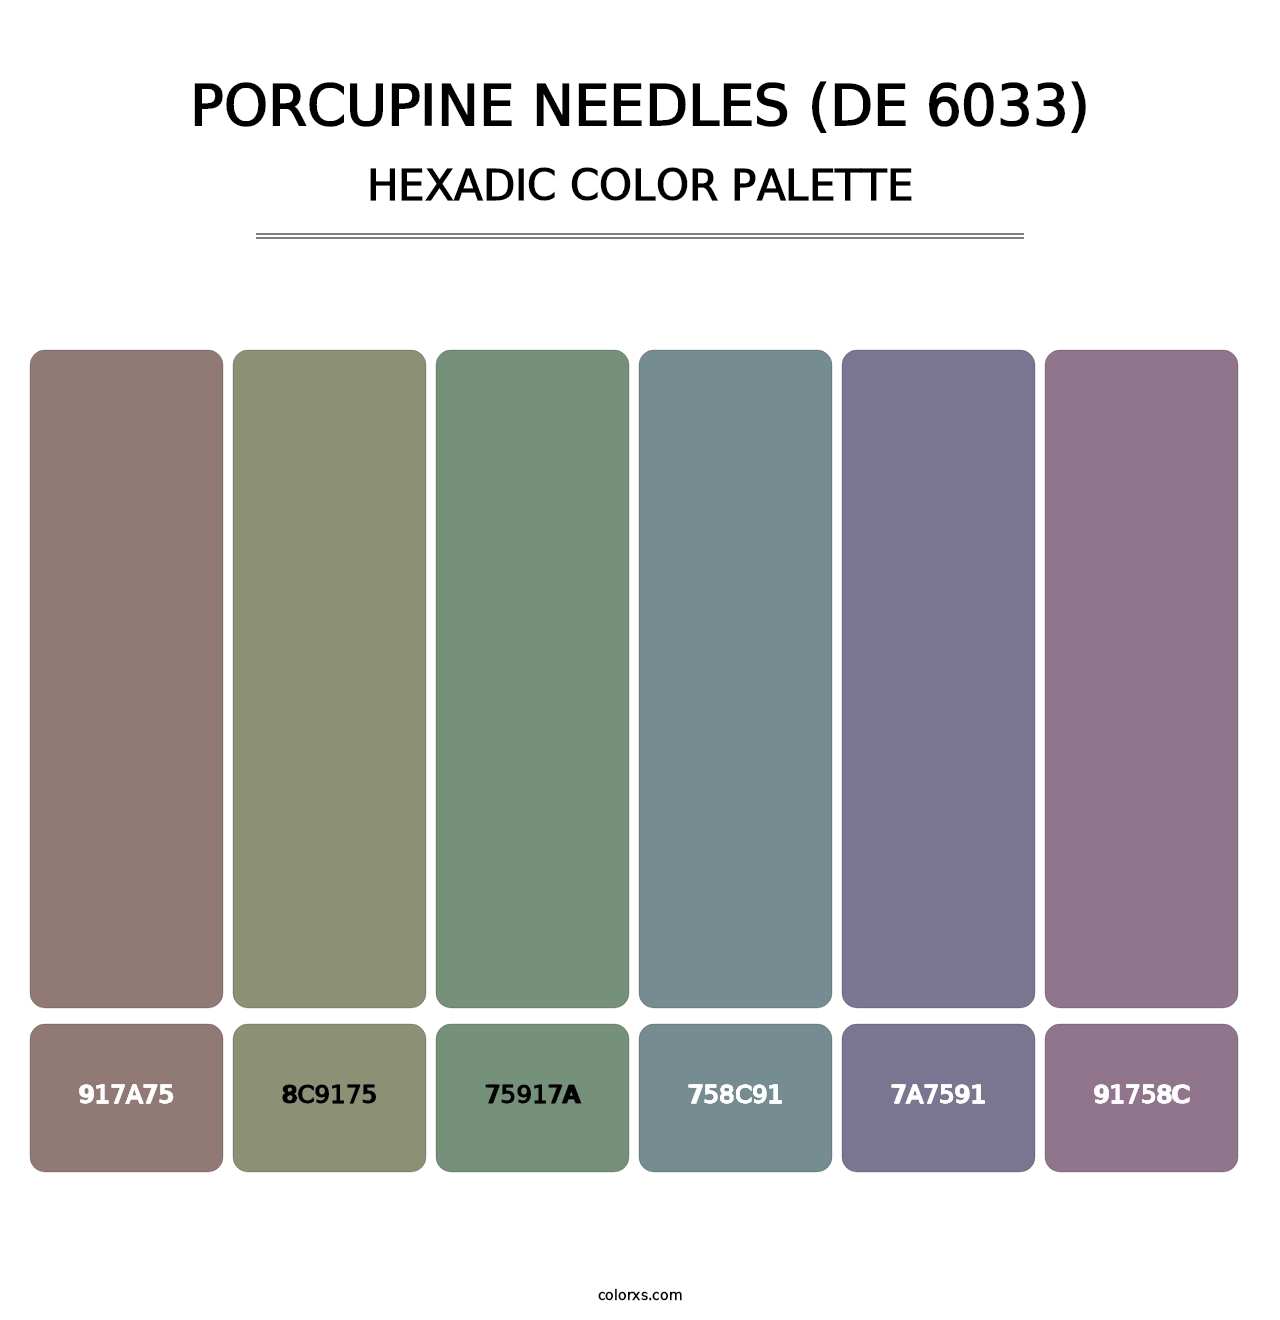 Porcupine Needles (DE 6033) - Hexadic Color Palette